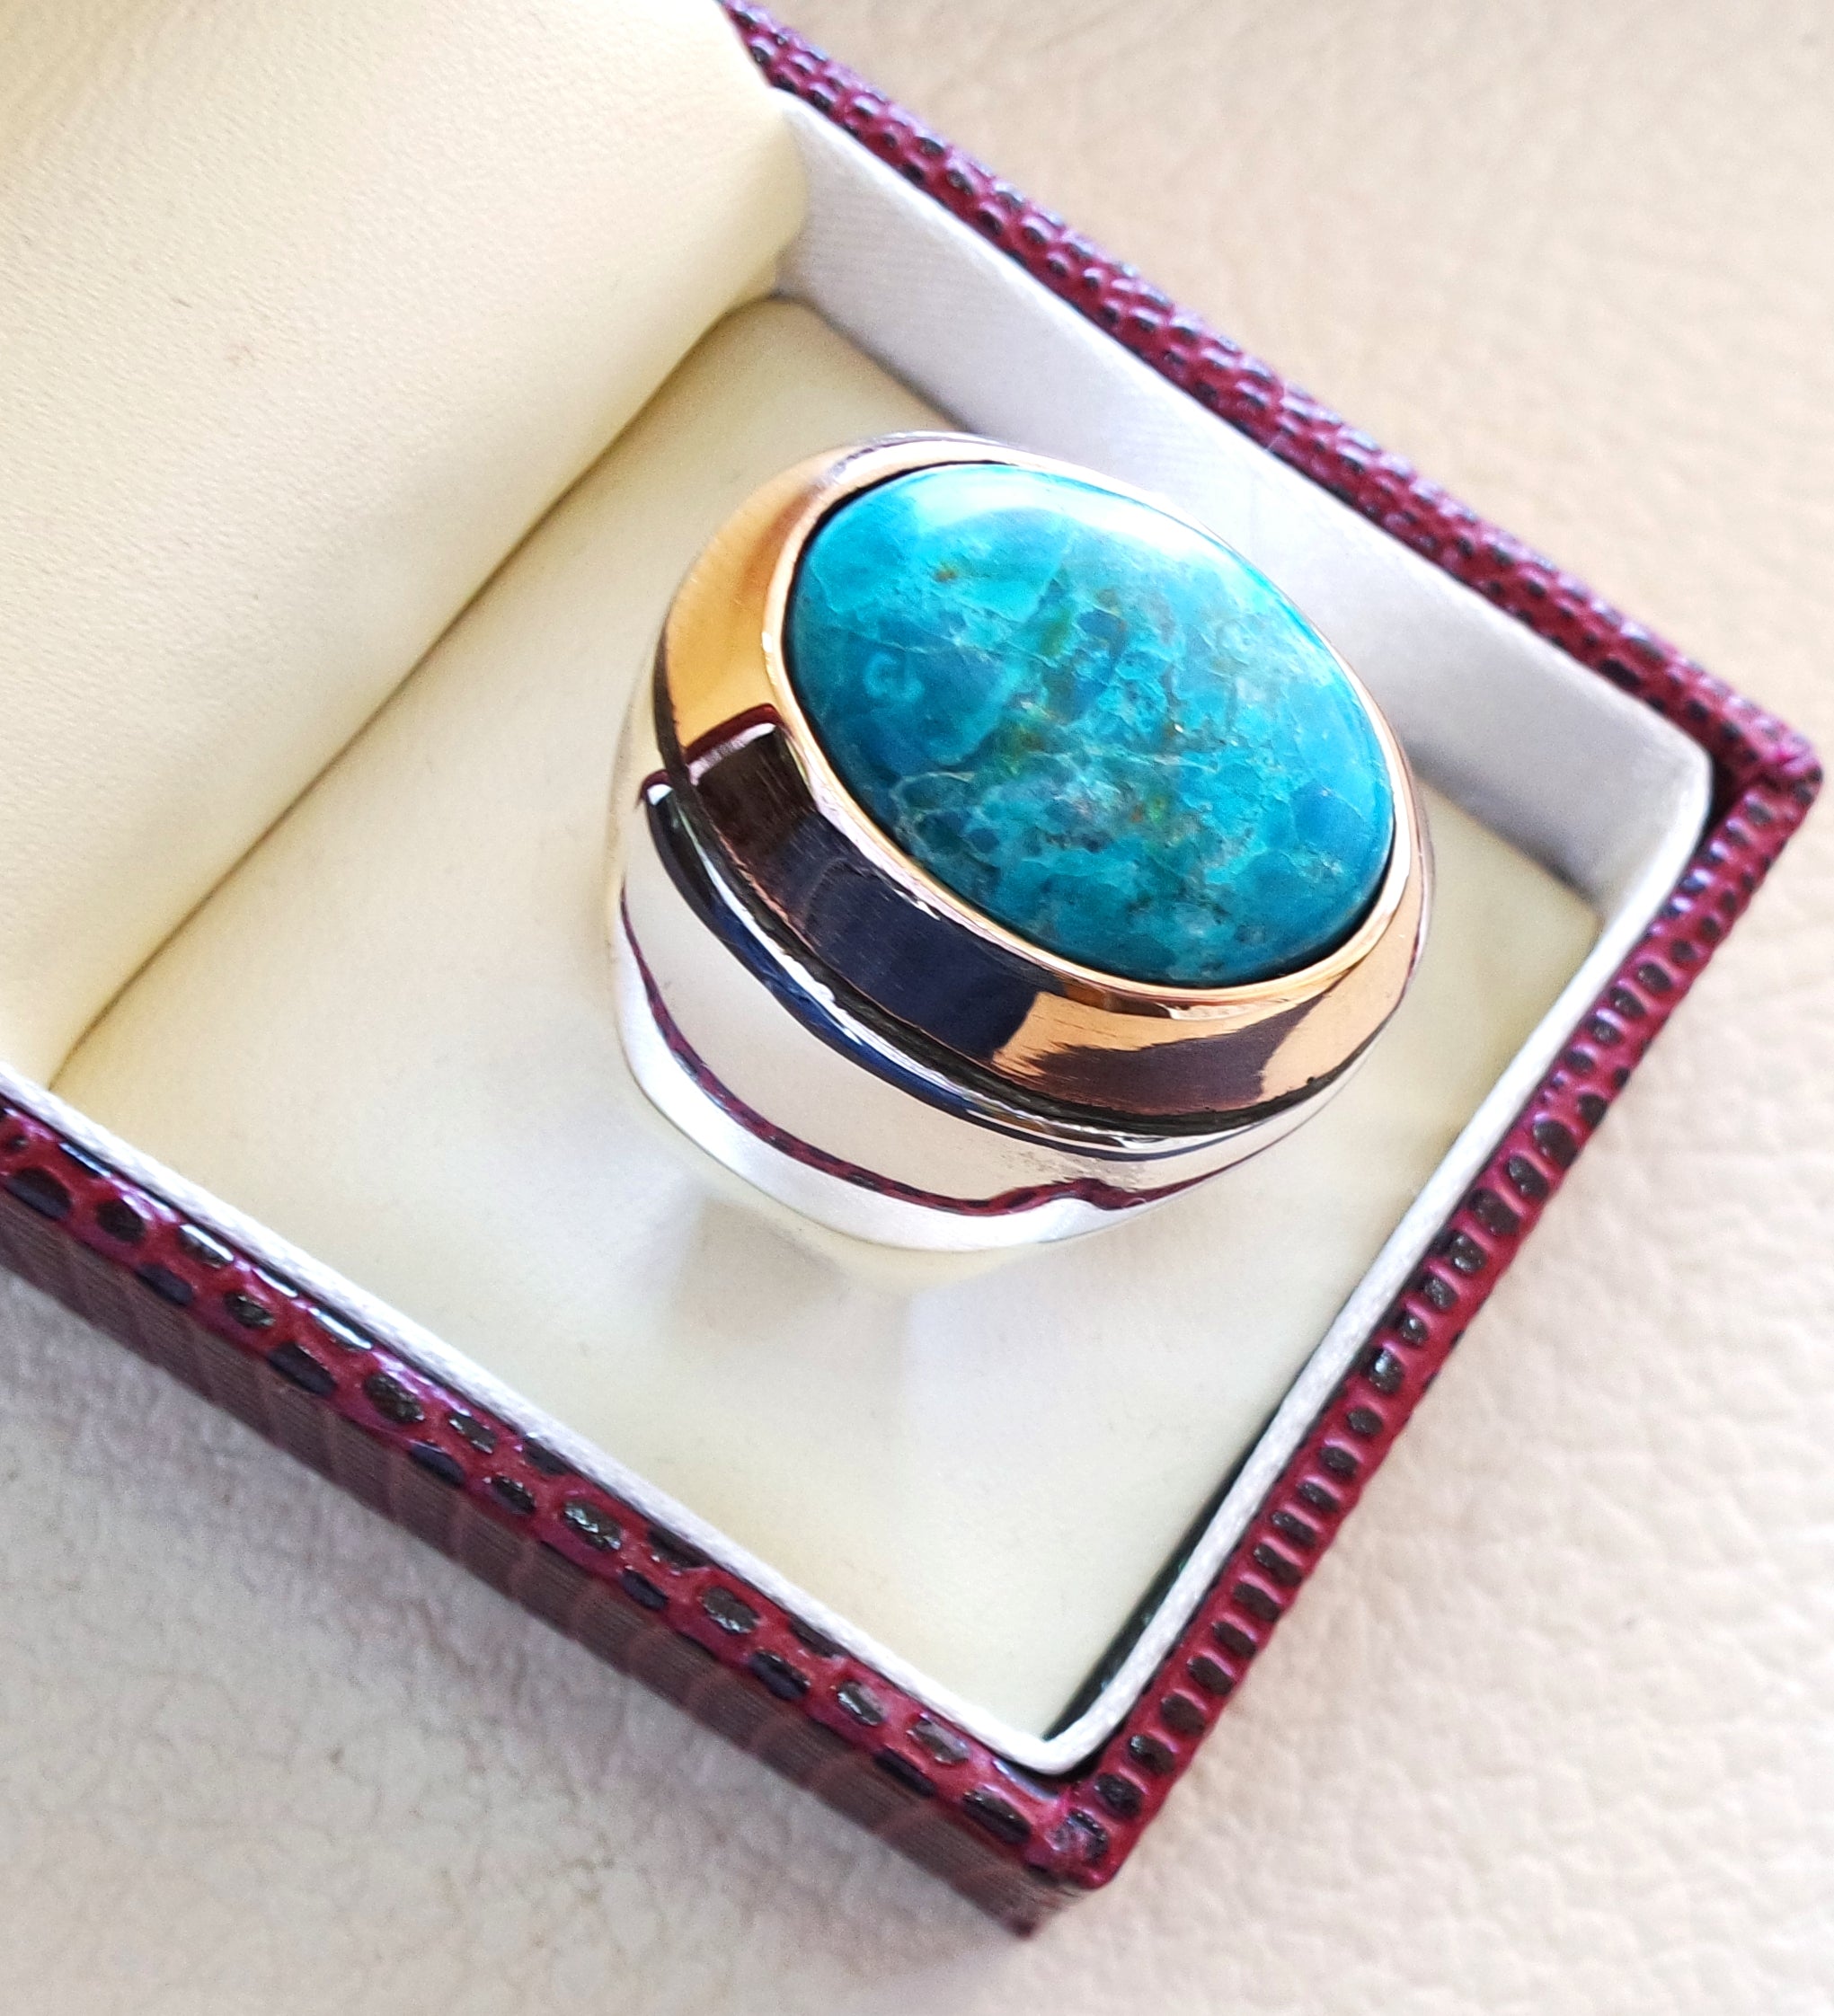 man Ring chryscolla Naturstein Sterling Silber 925 und Bronze Oval Cabochon Semi Precious Blue gem Ottoman arabische Stil alle Größen Schmuck